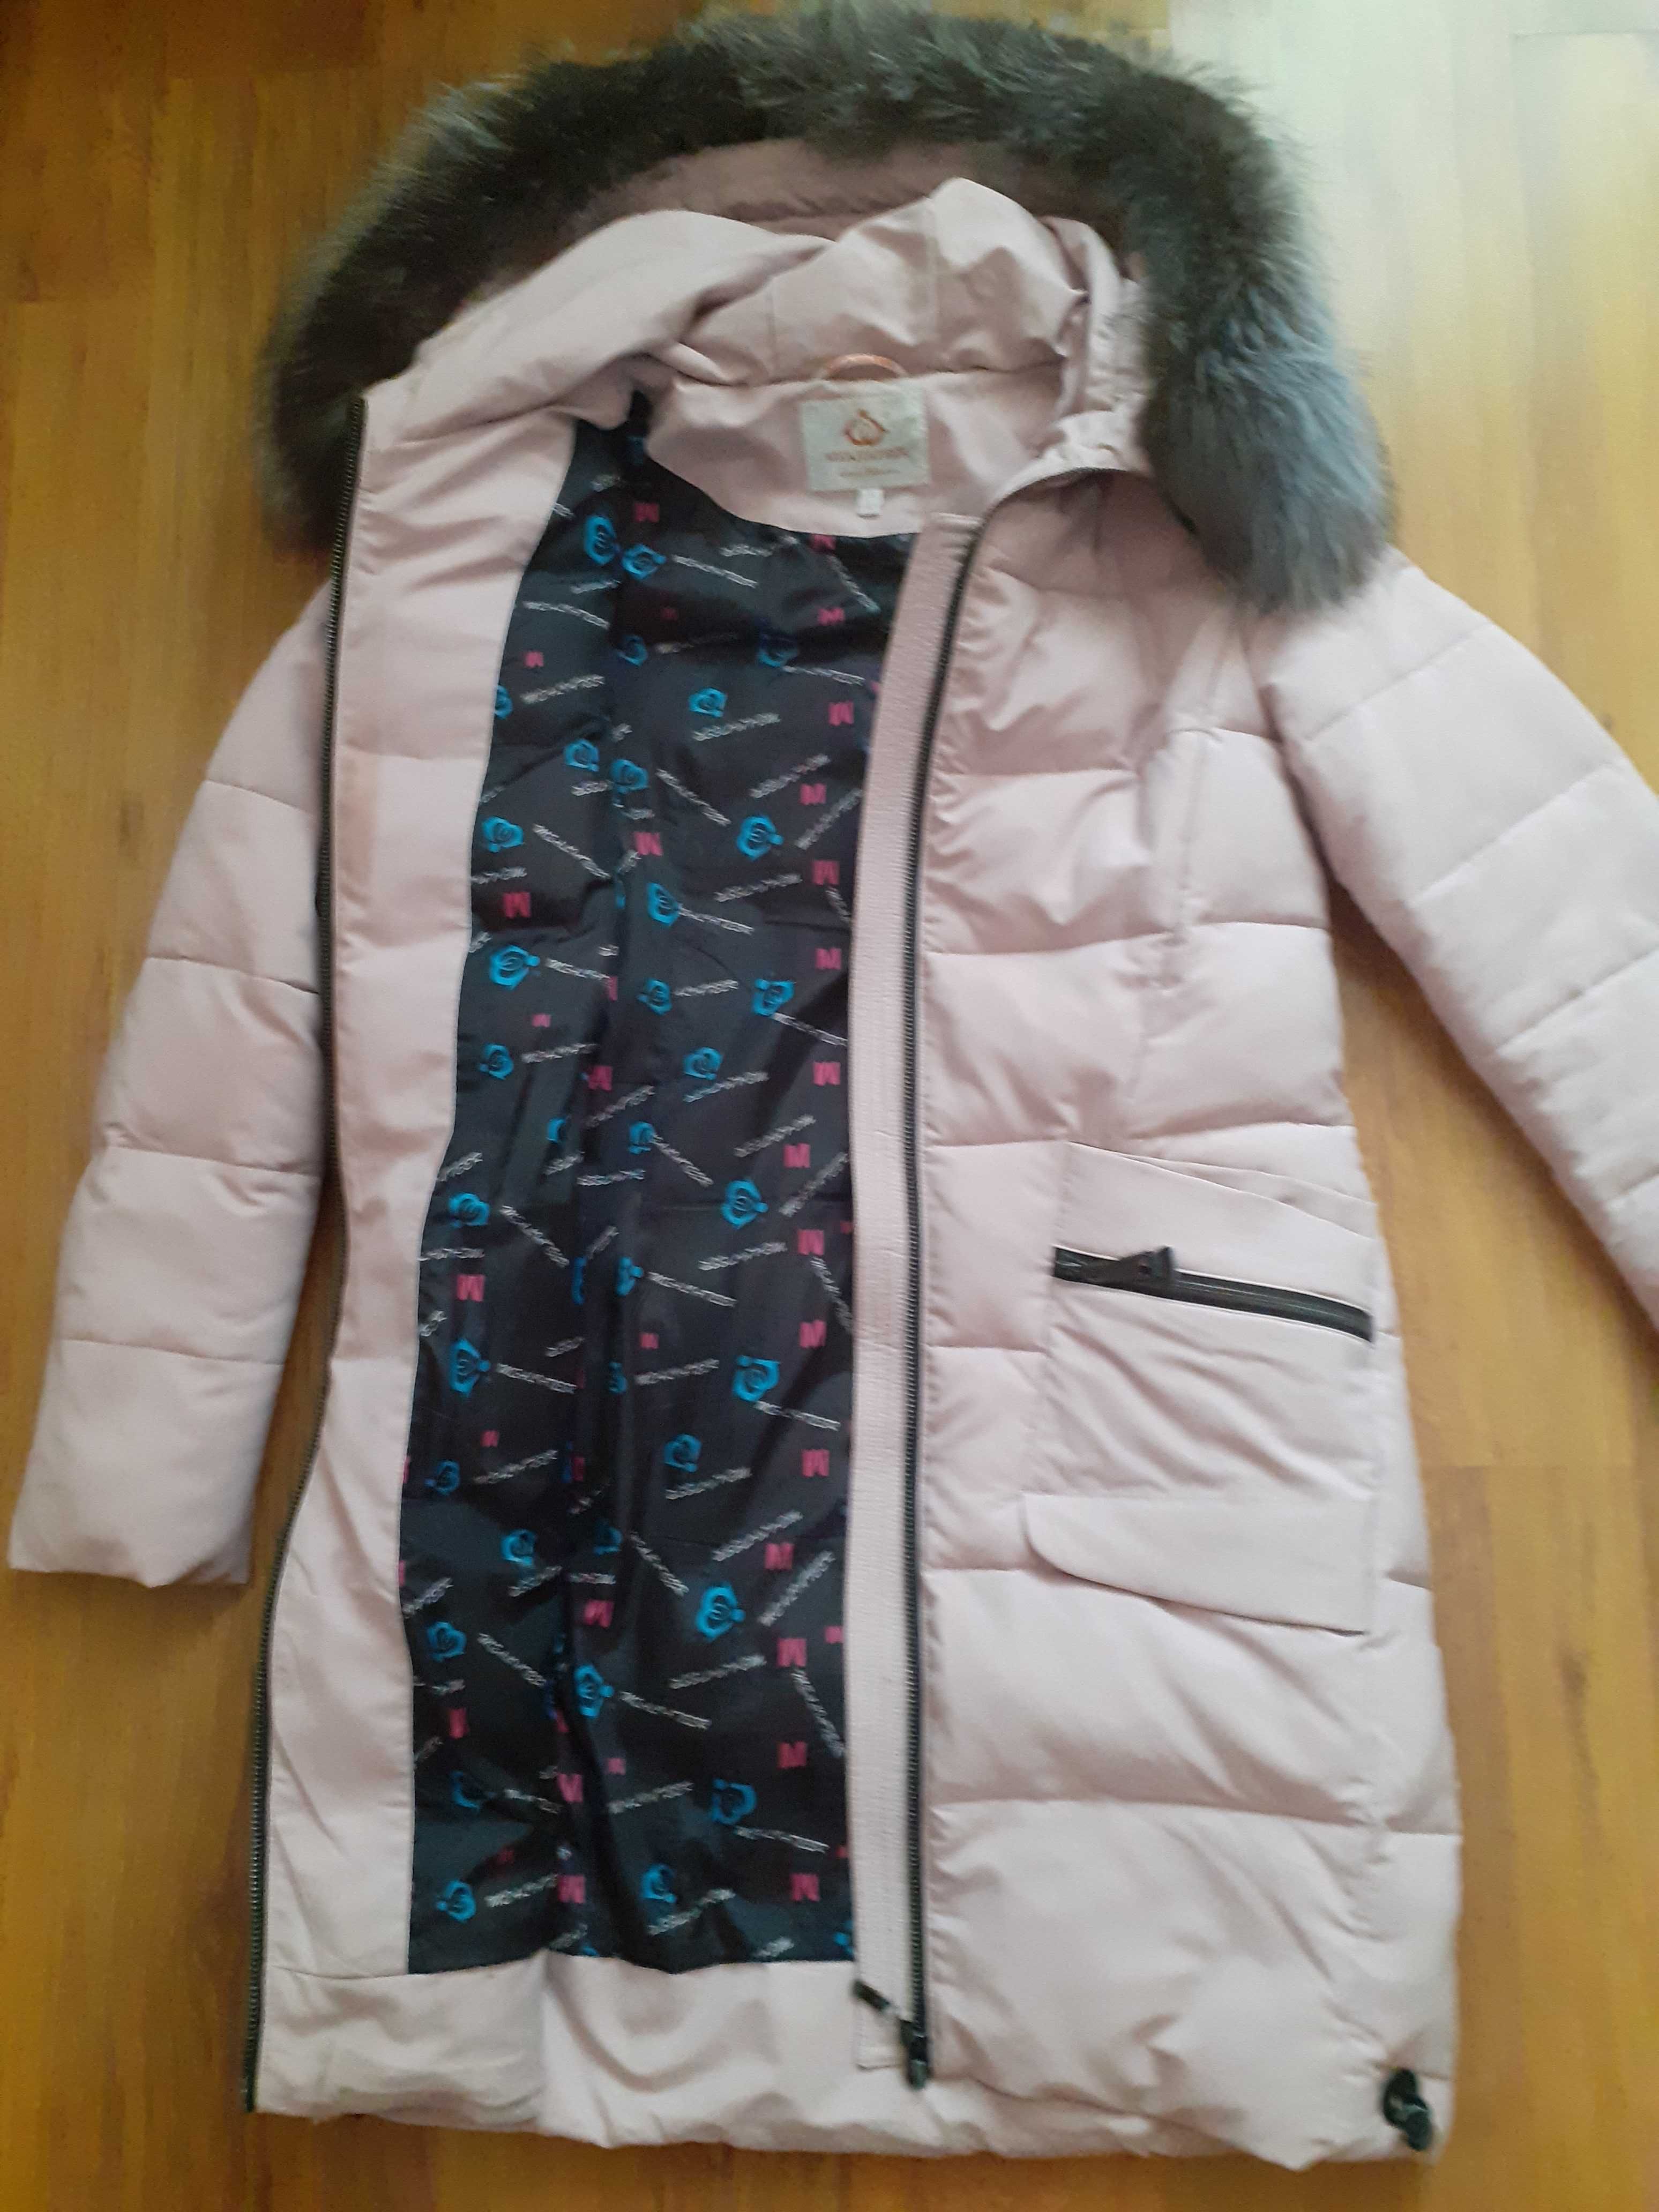 Зимова жіноча курточка